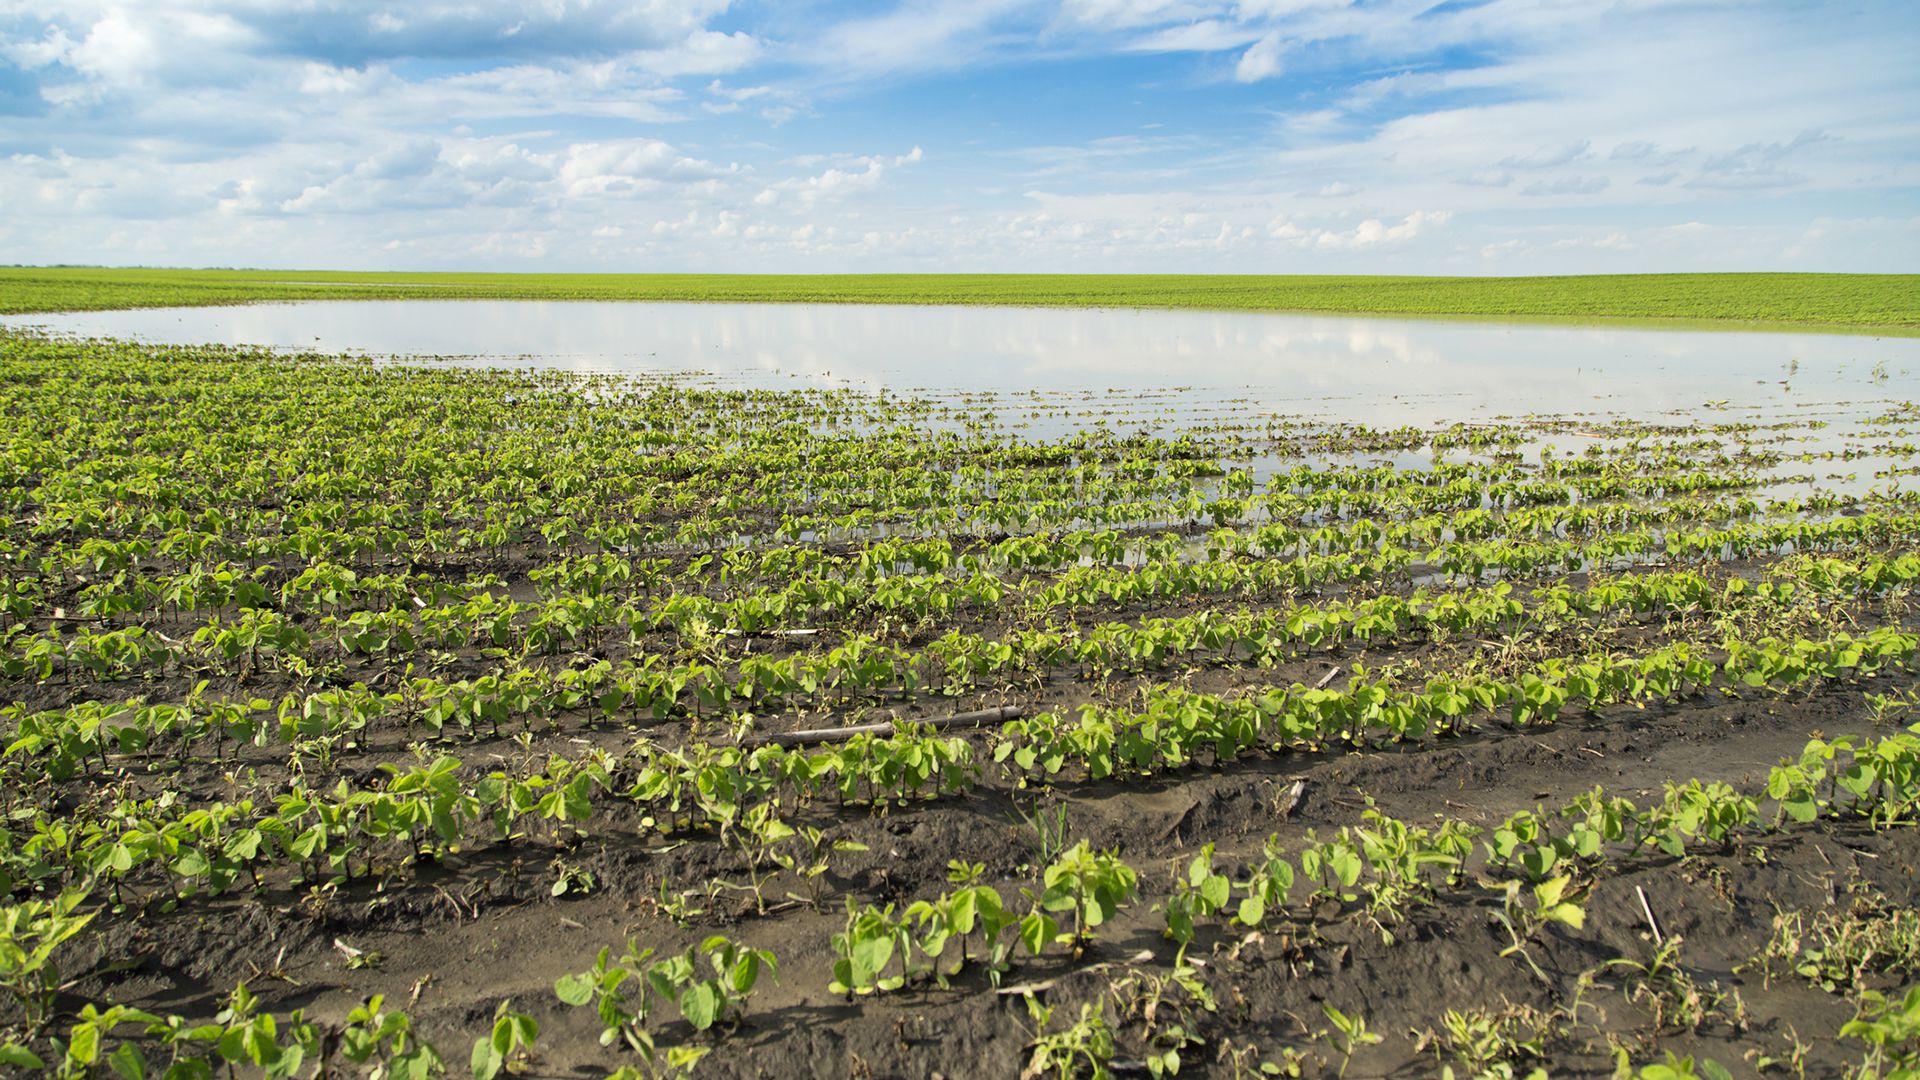 Un estudio publicado en la revista Science demostró que hubo un aumento de las inundaciones asociado a la expansión de la agricultura en la Argentina y parte de Paraguay durante los últimos 20 años (Getty)